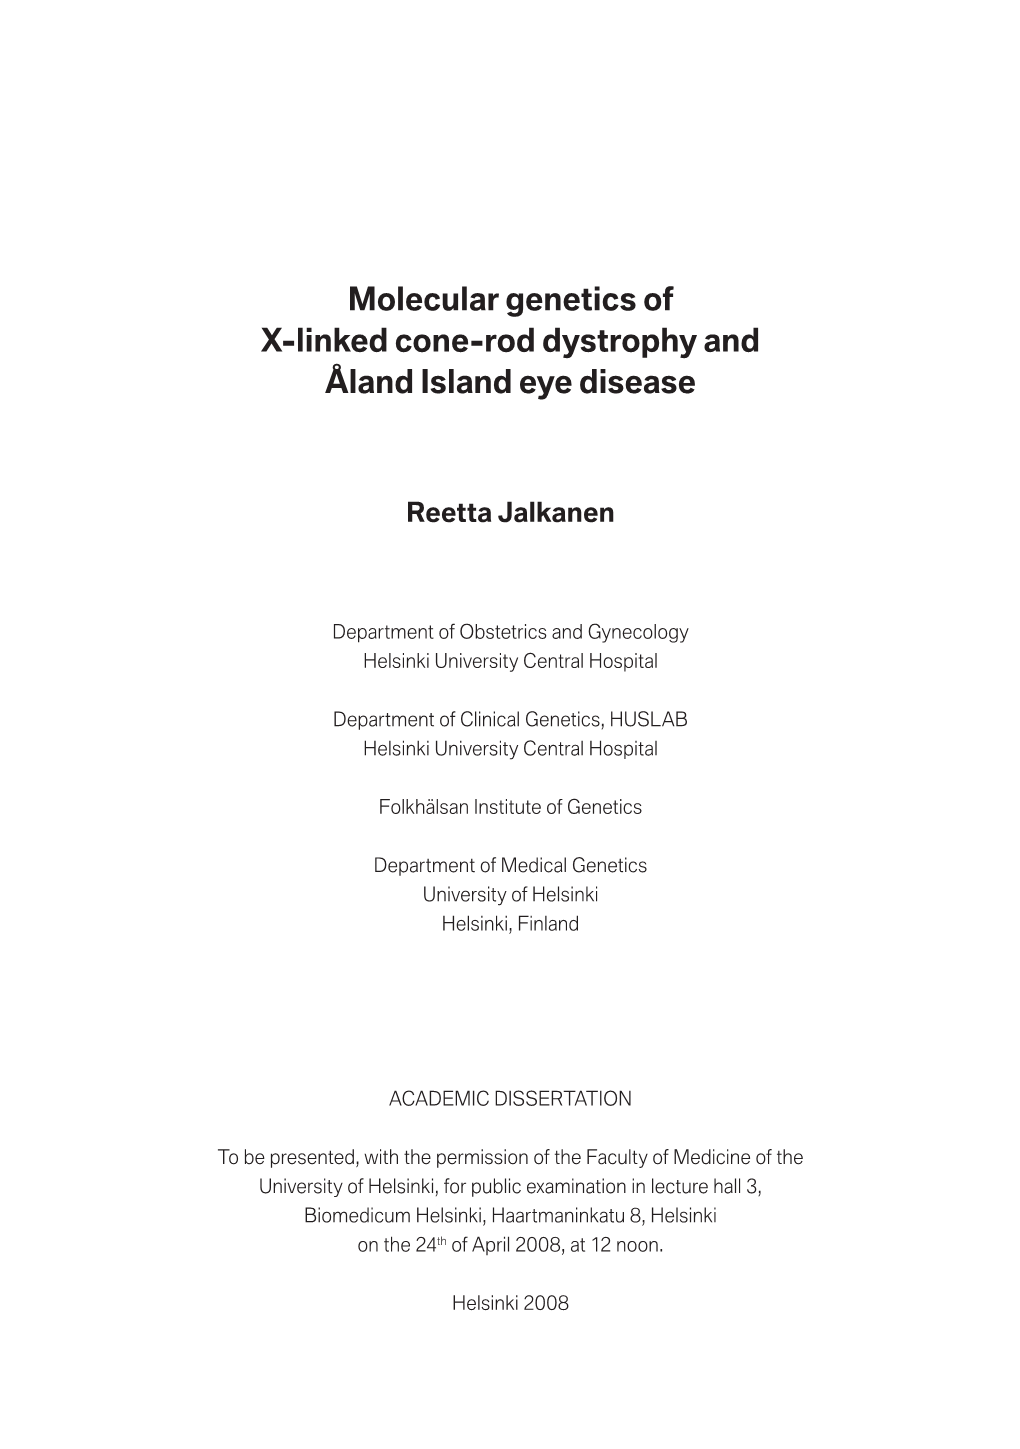 Molecular Genetics of X-Linked Cone-Rod Dystrophy and Åland Island Eye Disease